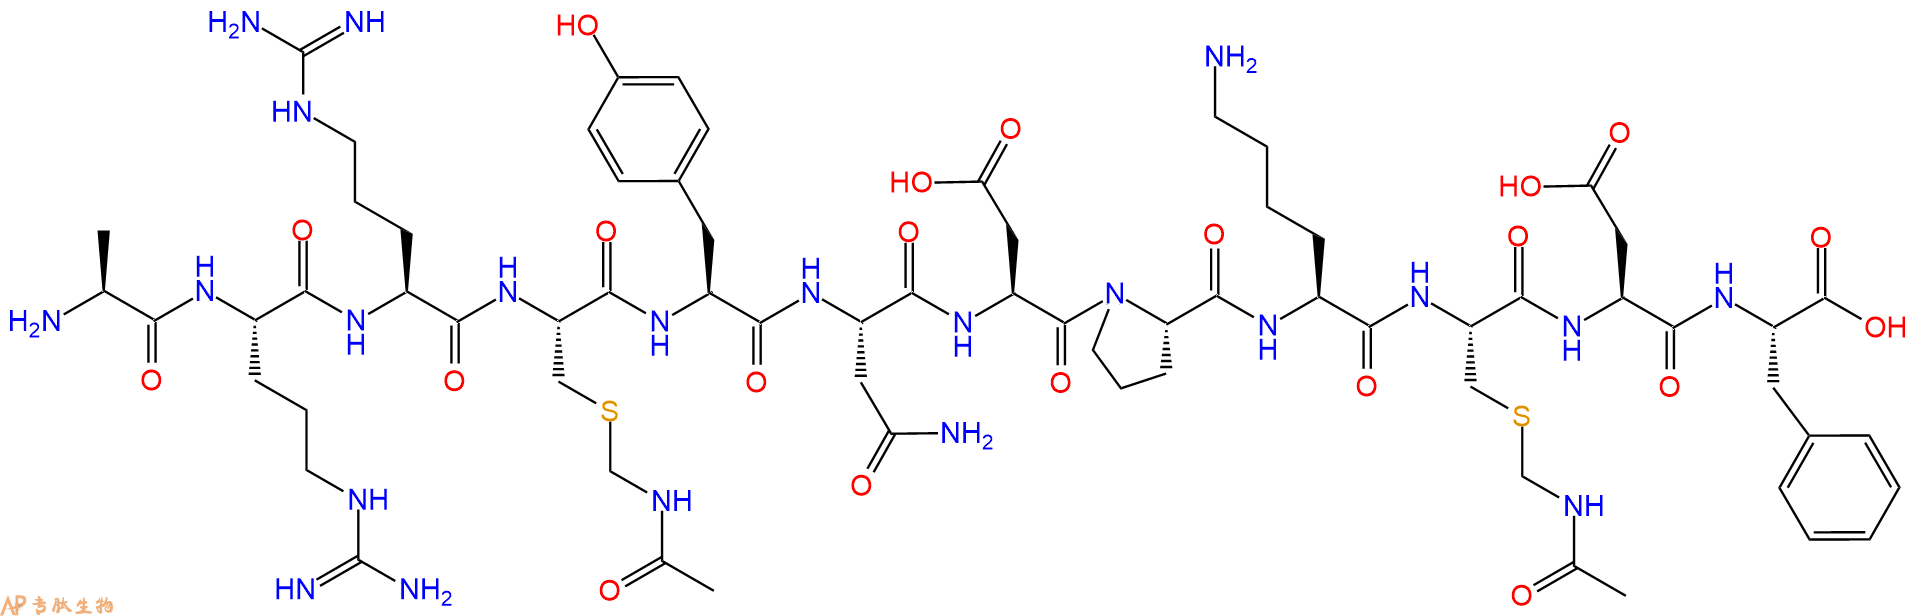 专肽生物产品十二肽ARR-C(Acm)-YNDPK-C(Acm)-DF